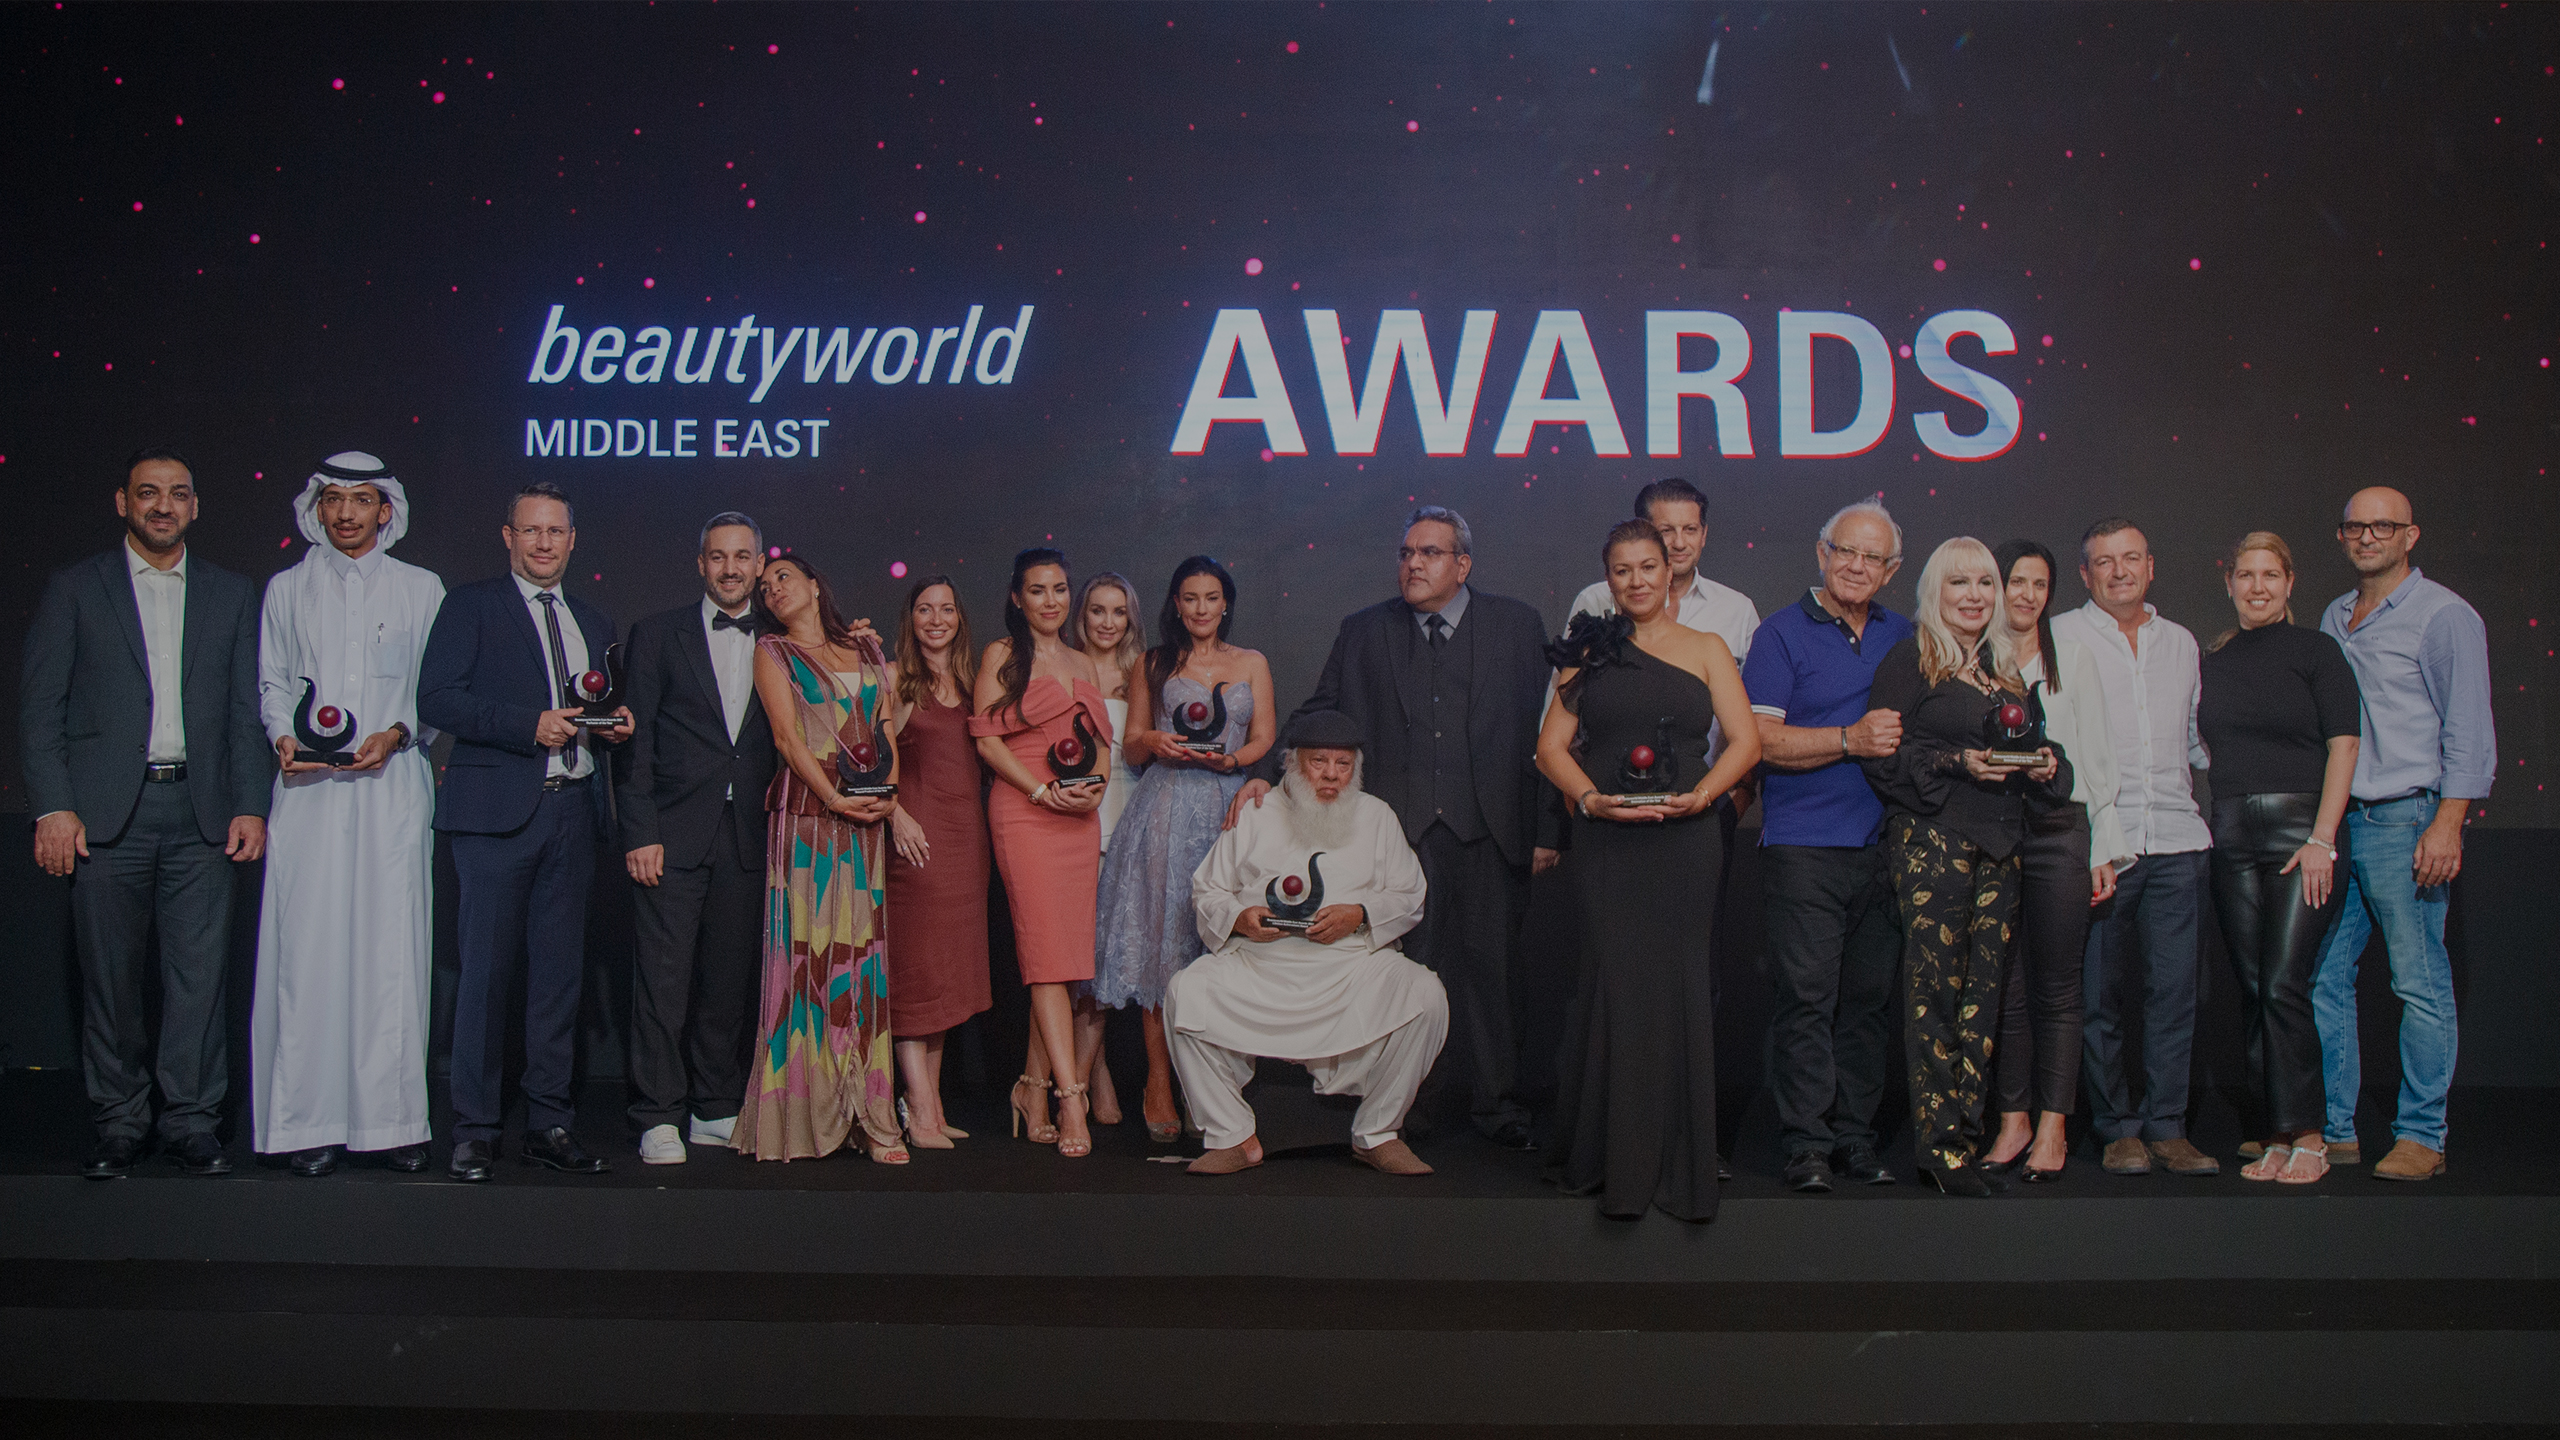 Beautyworld Middle East - Beautyworld Middle East Awards 2022